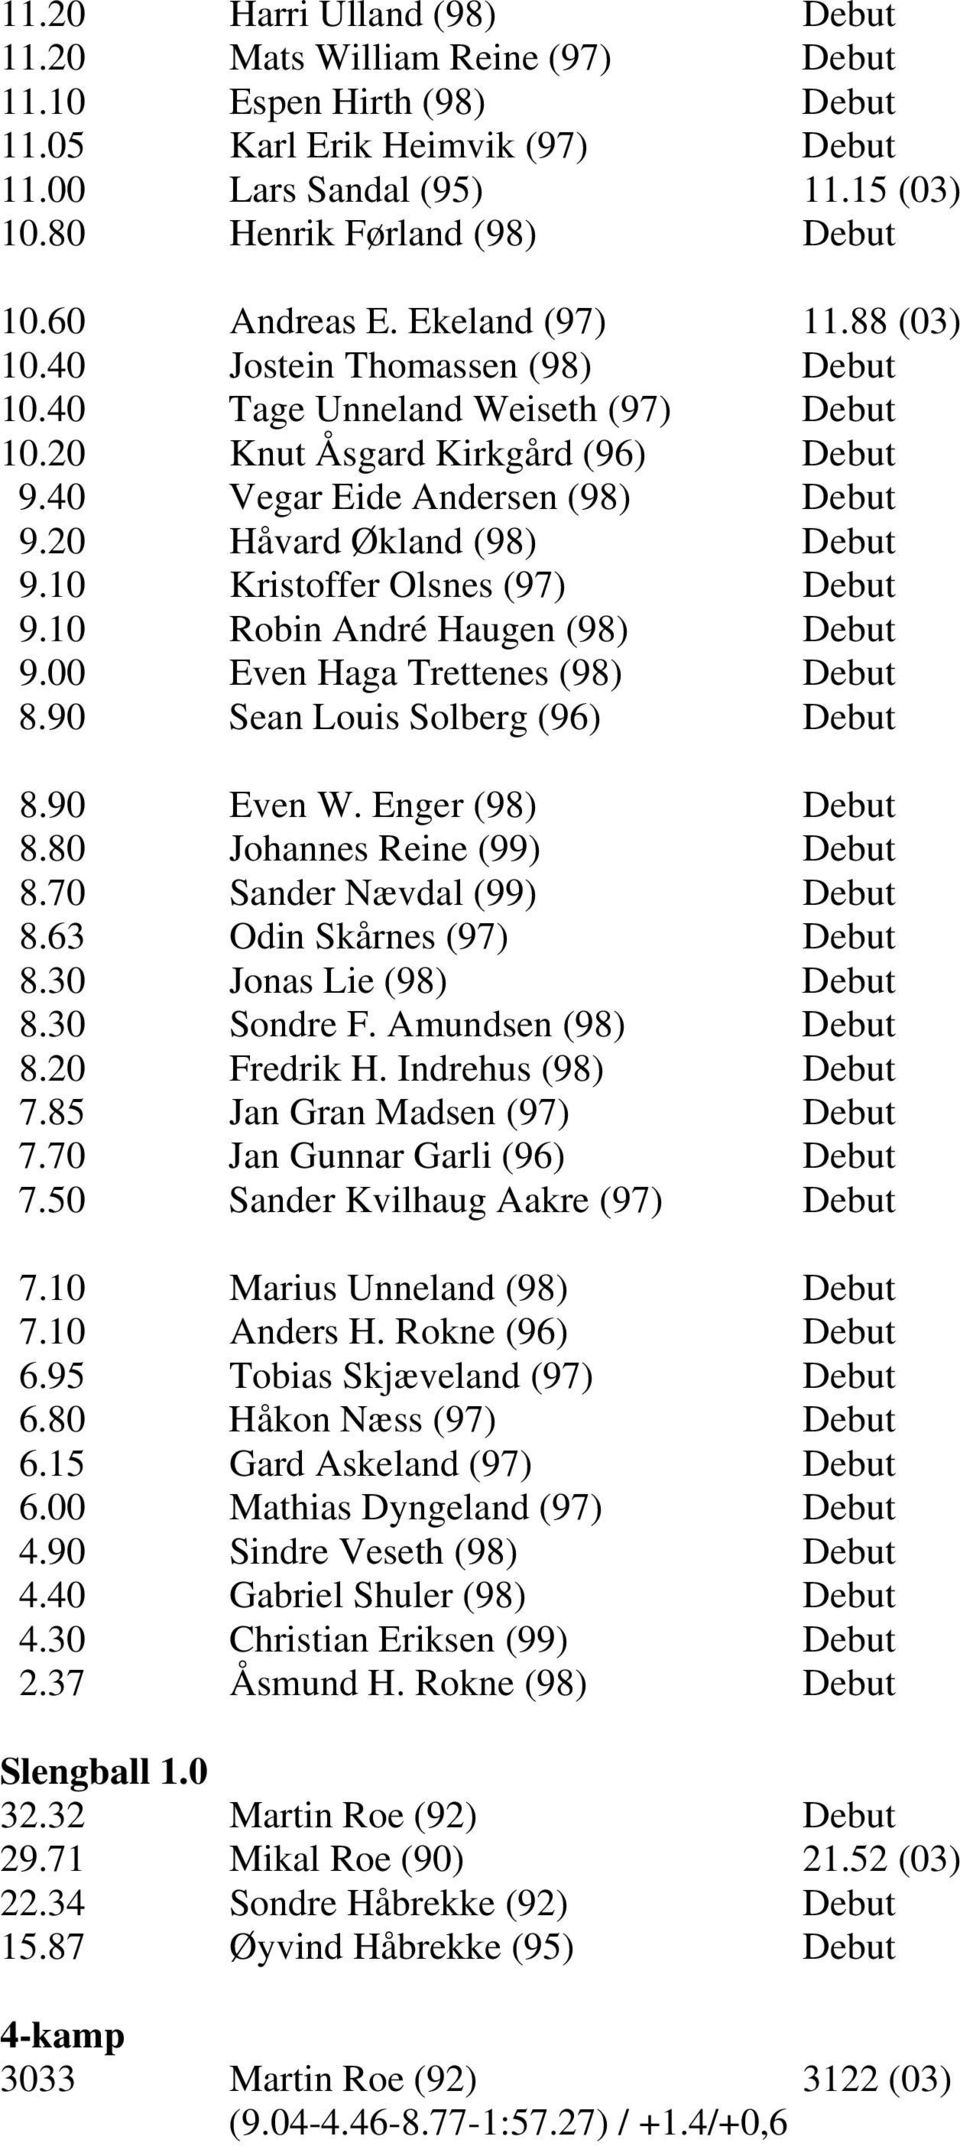 20 Håvard Økland (98) Debut 9.10 Kristoffer Olsnes (97) Debut 9.10 Robin André Haugen (98) Debut 9.00 Even Haga Trettenes (98) Debut 8.90 Sean Louis Solberg (96) Debut 8.90 Even W. Enger (98) Debut 8.